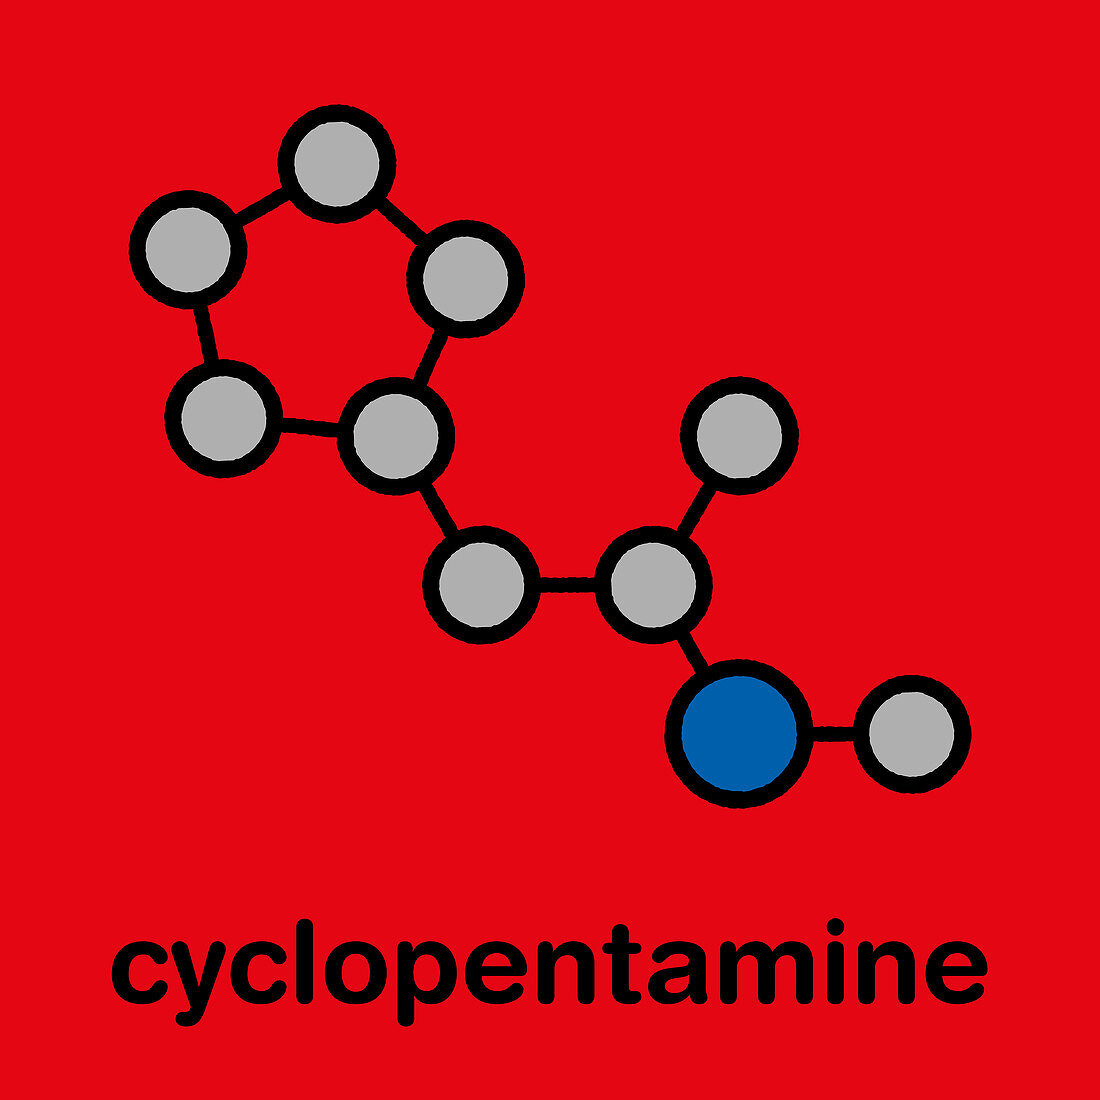 Cyclopentamine nasal decongestant molecule, illustration